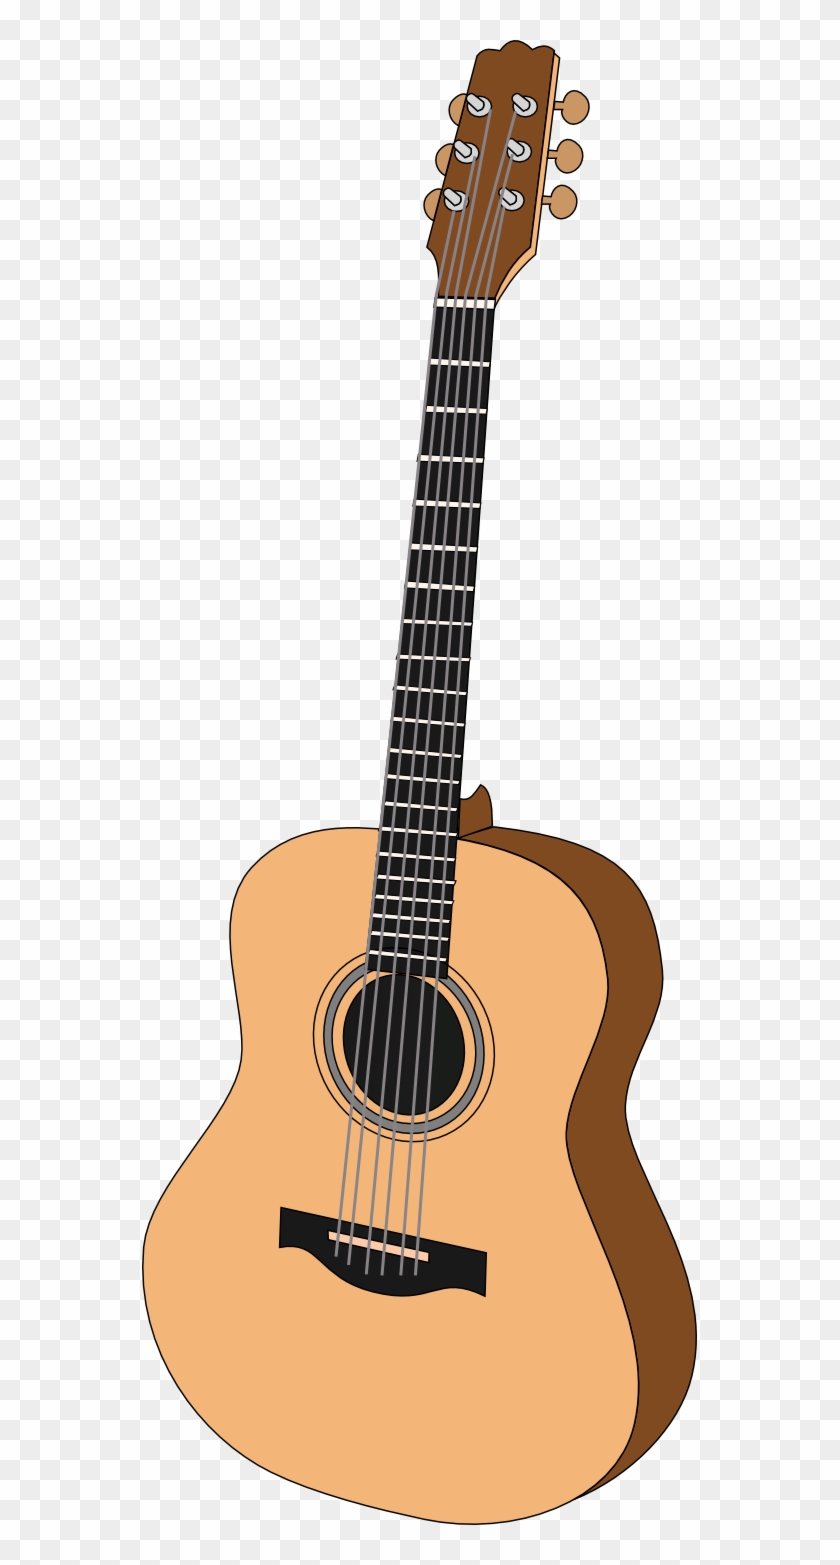 Free Guitar Clip Art - Guitar #1332953